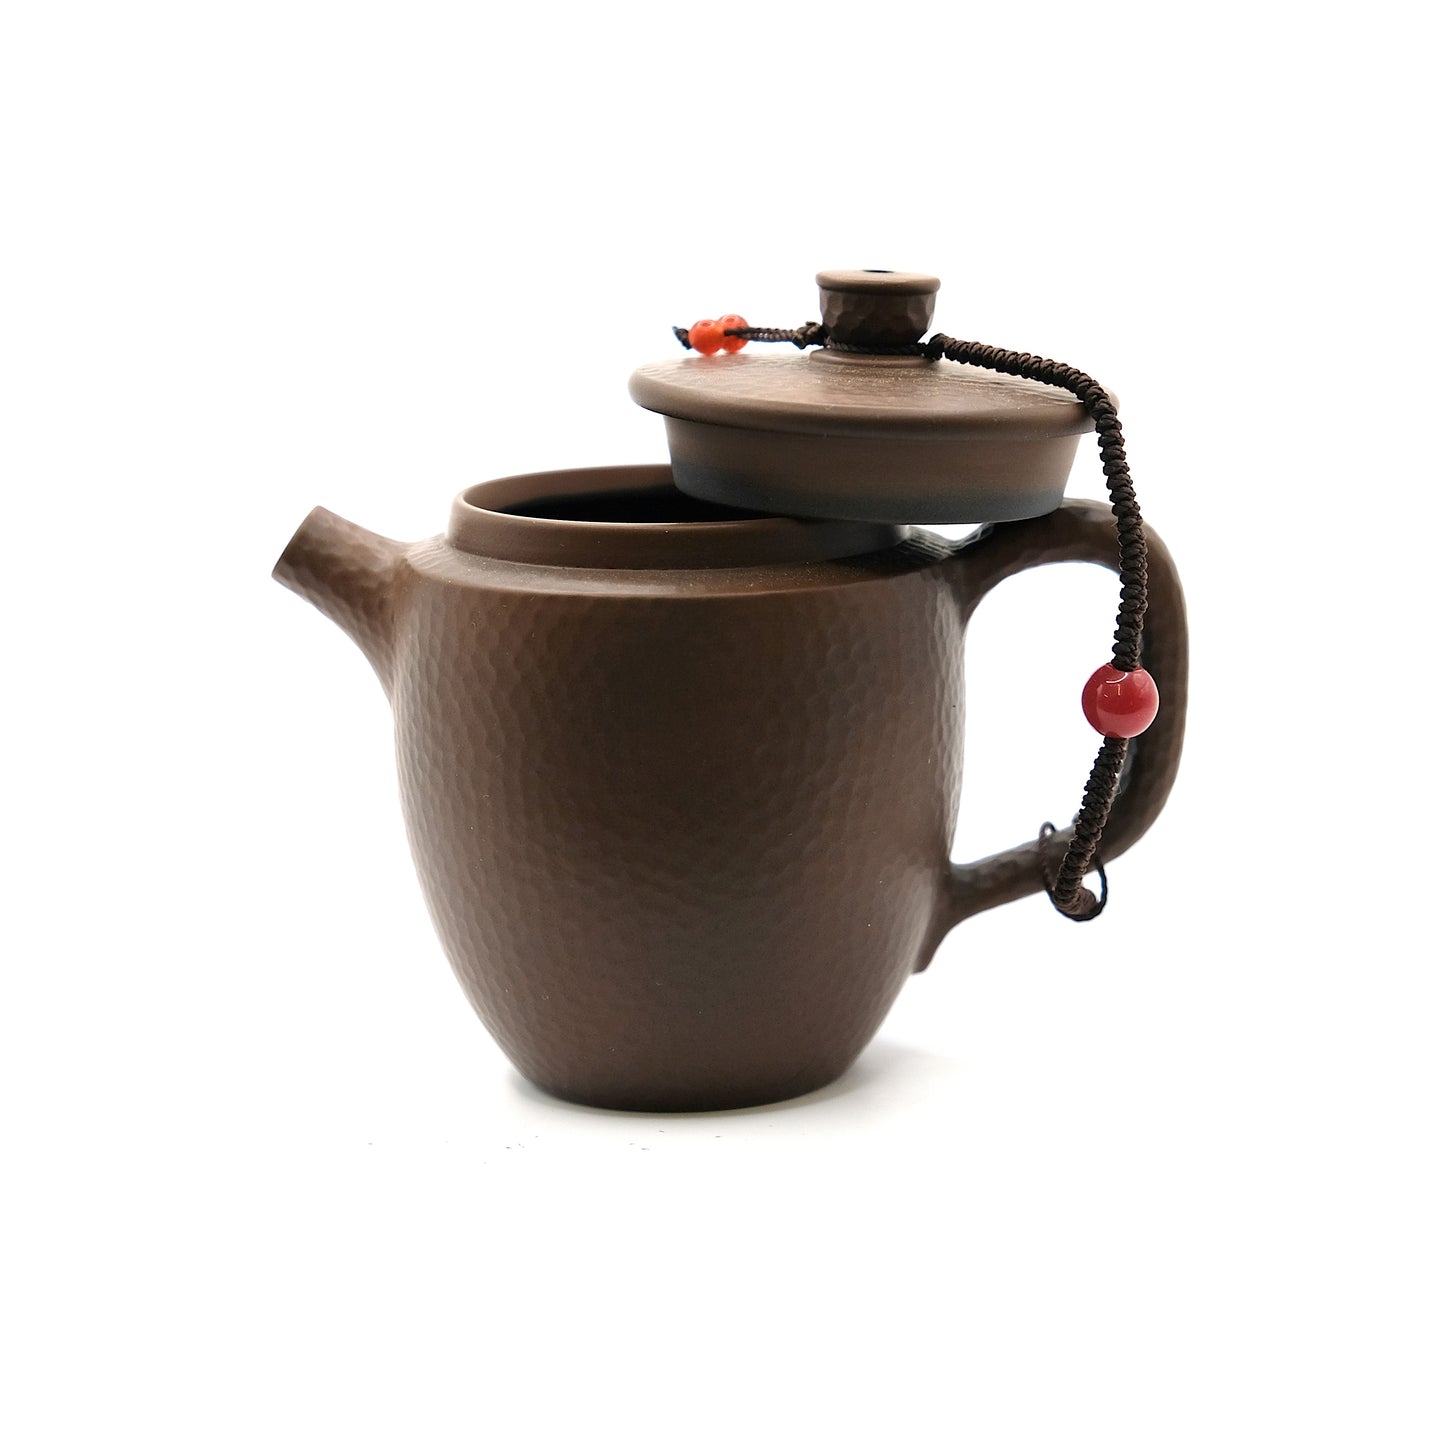 Gong-fu teapot #1135, Jianshui ceramics, 100 ml